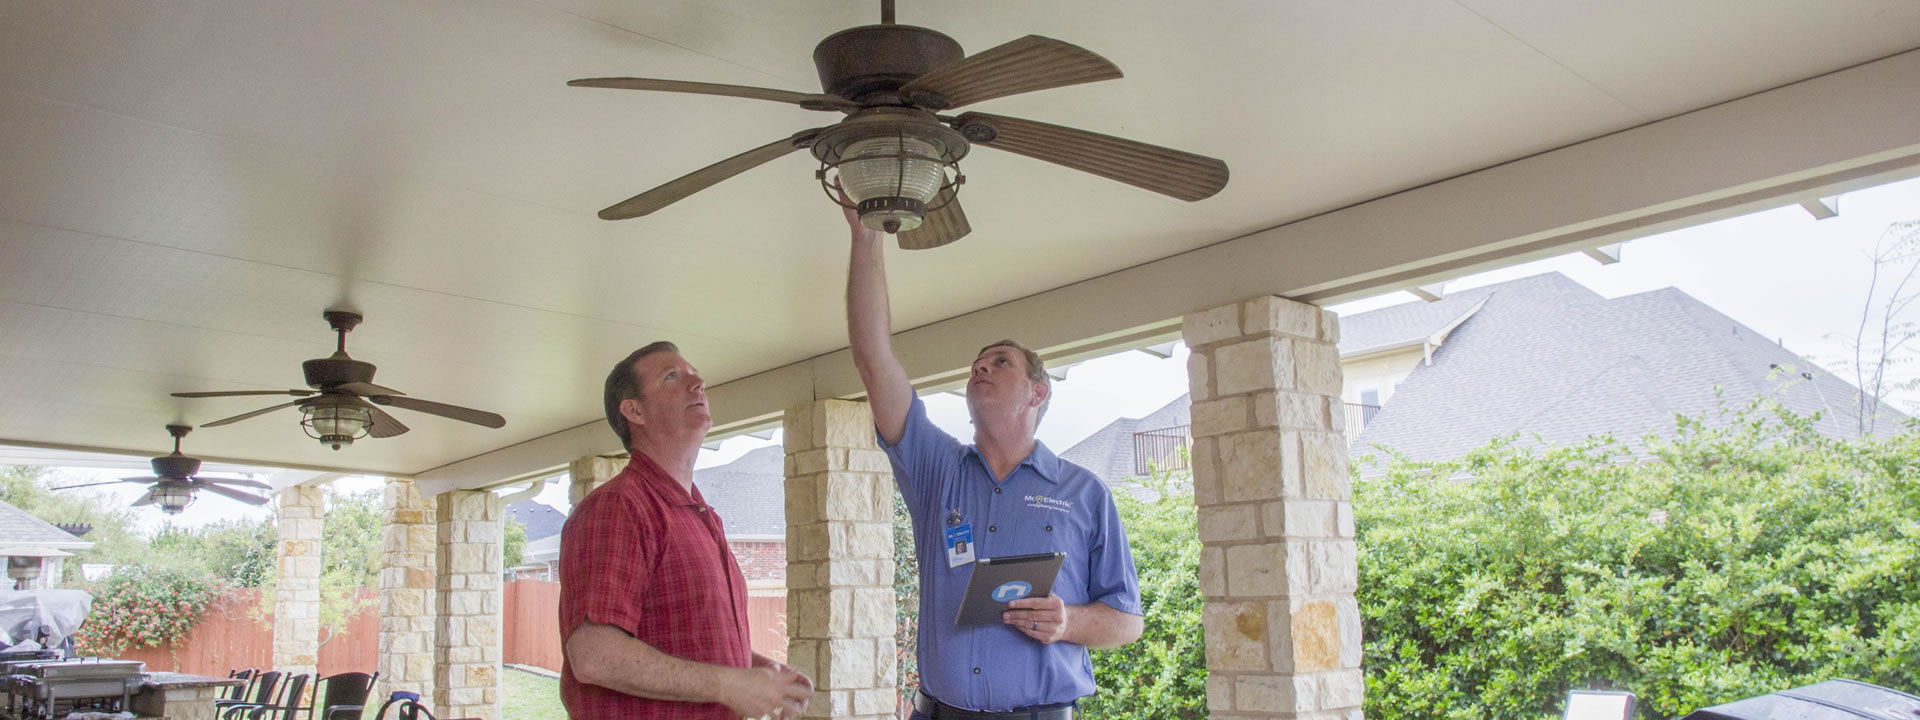 Ceiling Fan Installation in Lancaster, TX